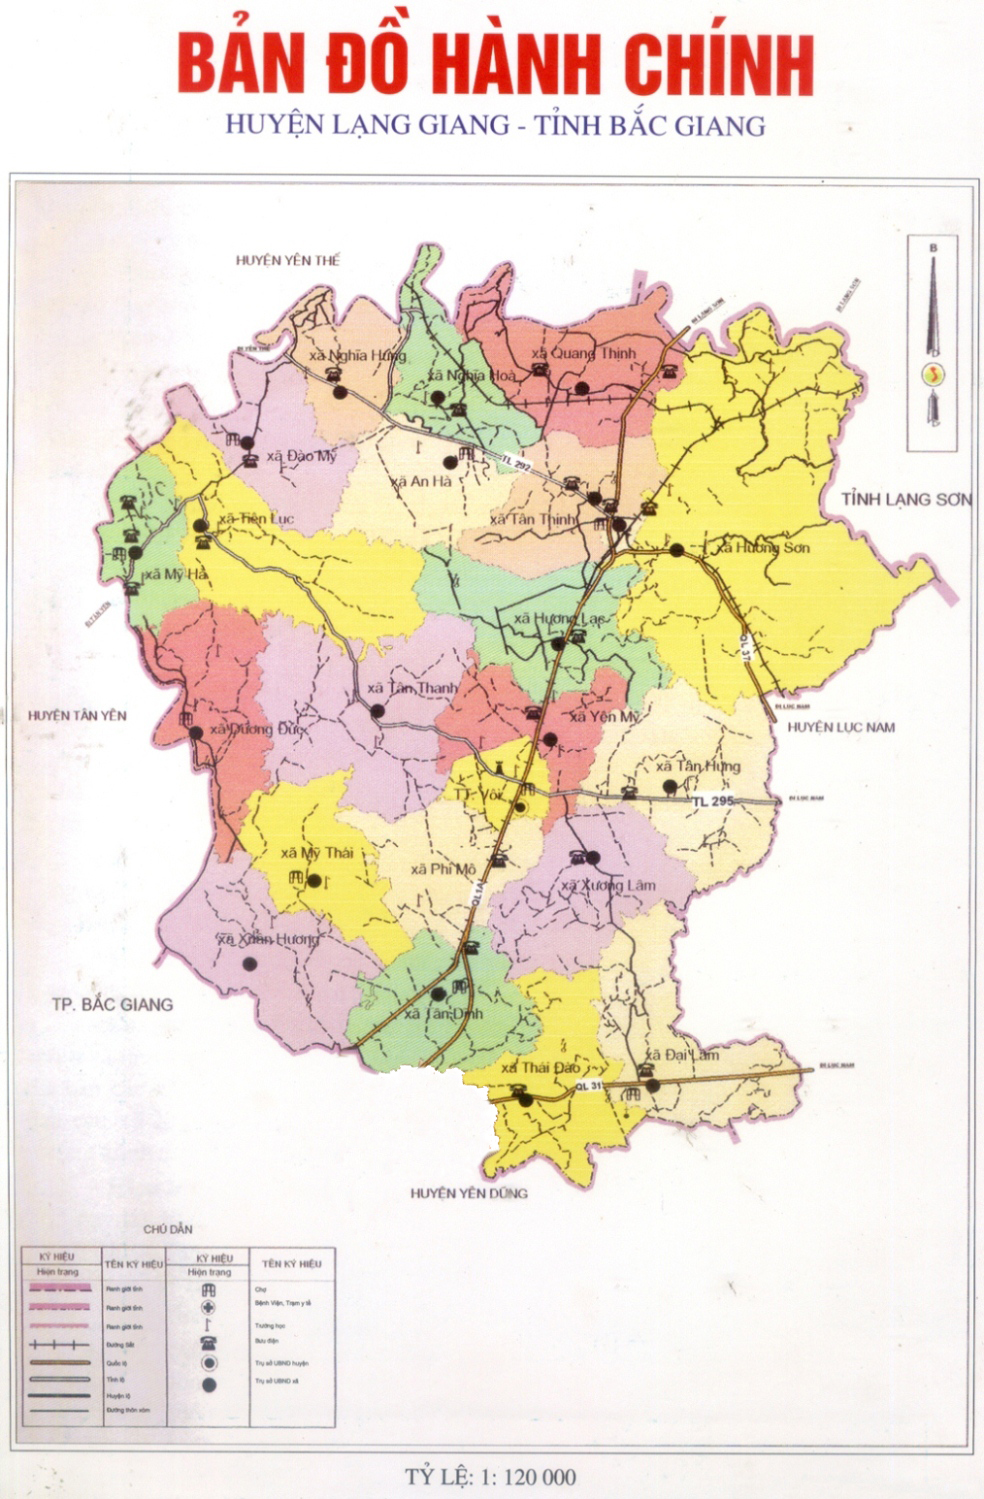 Bản đồ hành chính huyện Lạng Giang là một nguồn thông tin quan trọng hỗ trợ cho những người đang sống hoặc làm việc tại địa phương này. Bạn có thể dễ dàng tra cứu những thông tin về các địa chỉ, cơ quan hành chính, các trung tâm dịch vụ công cộng, trường học và bệnh viện trong khu vực.